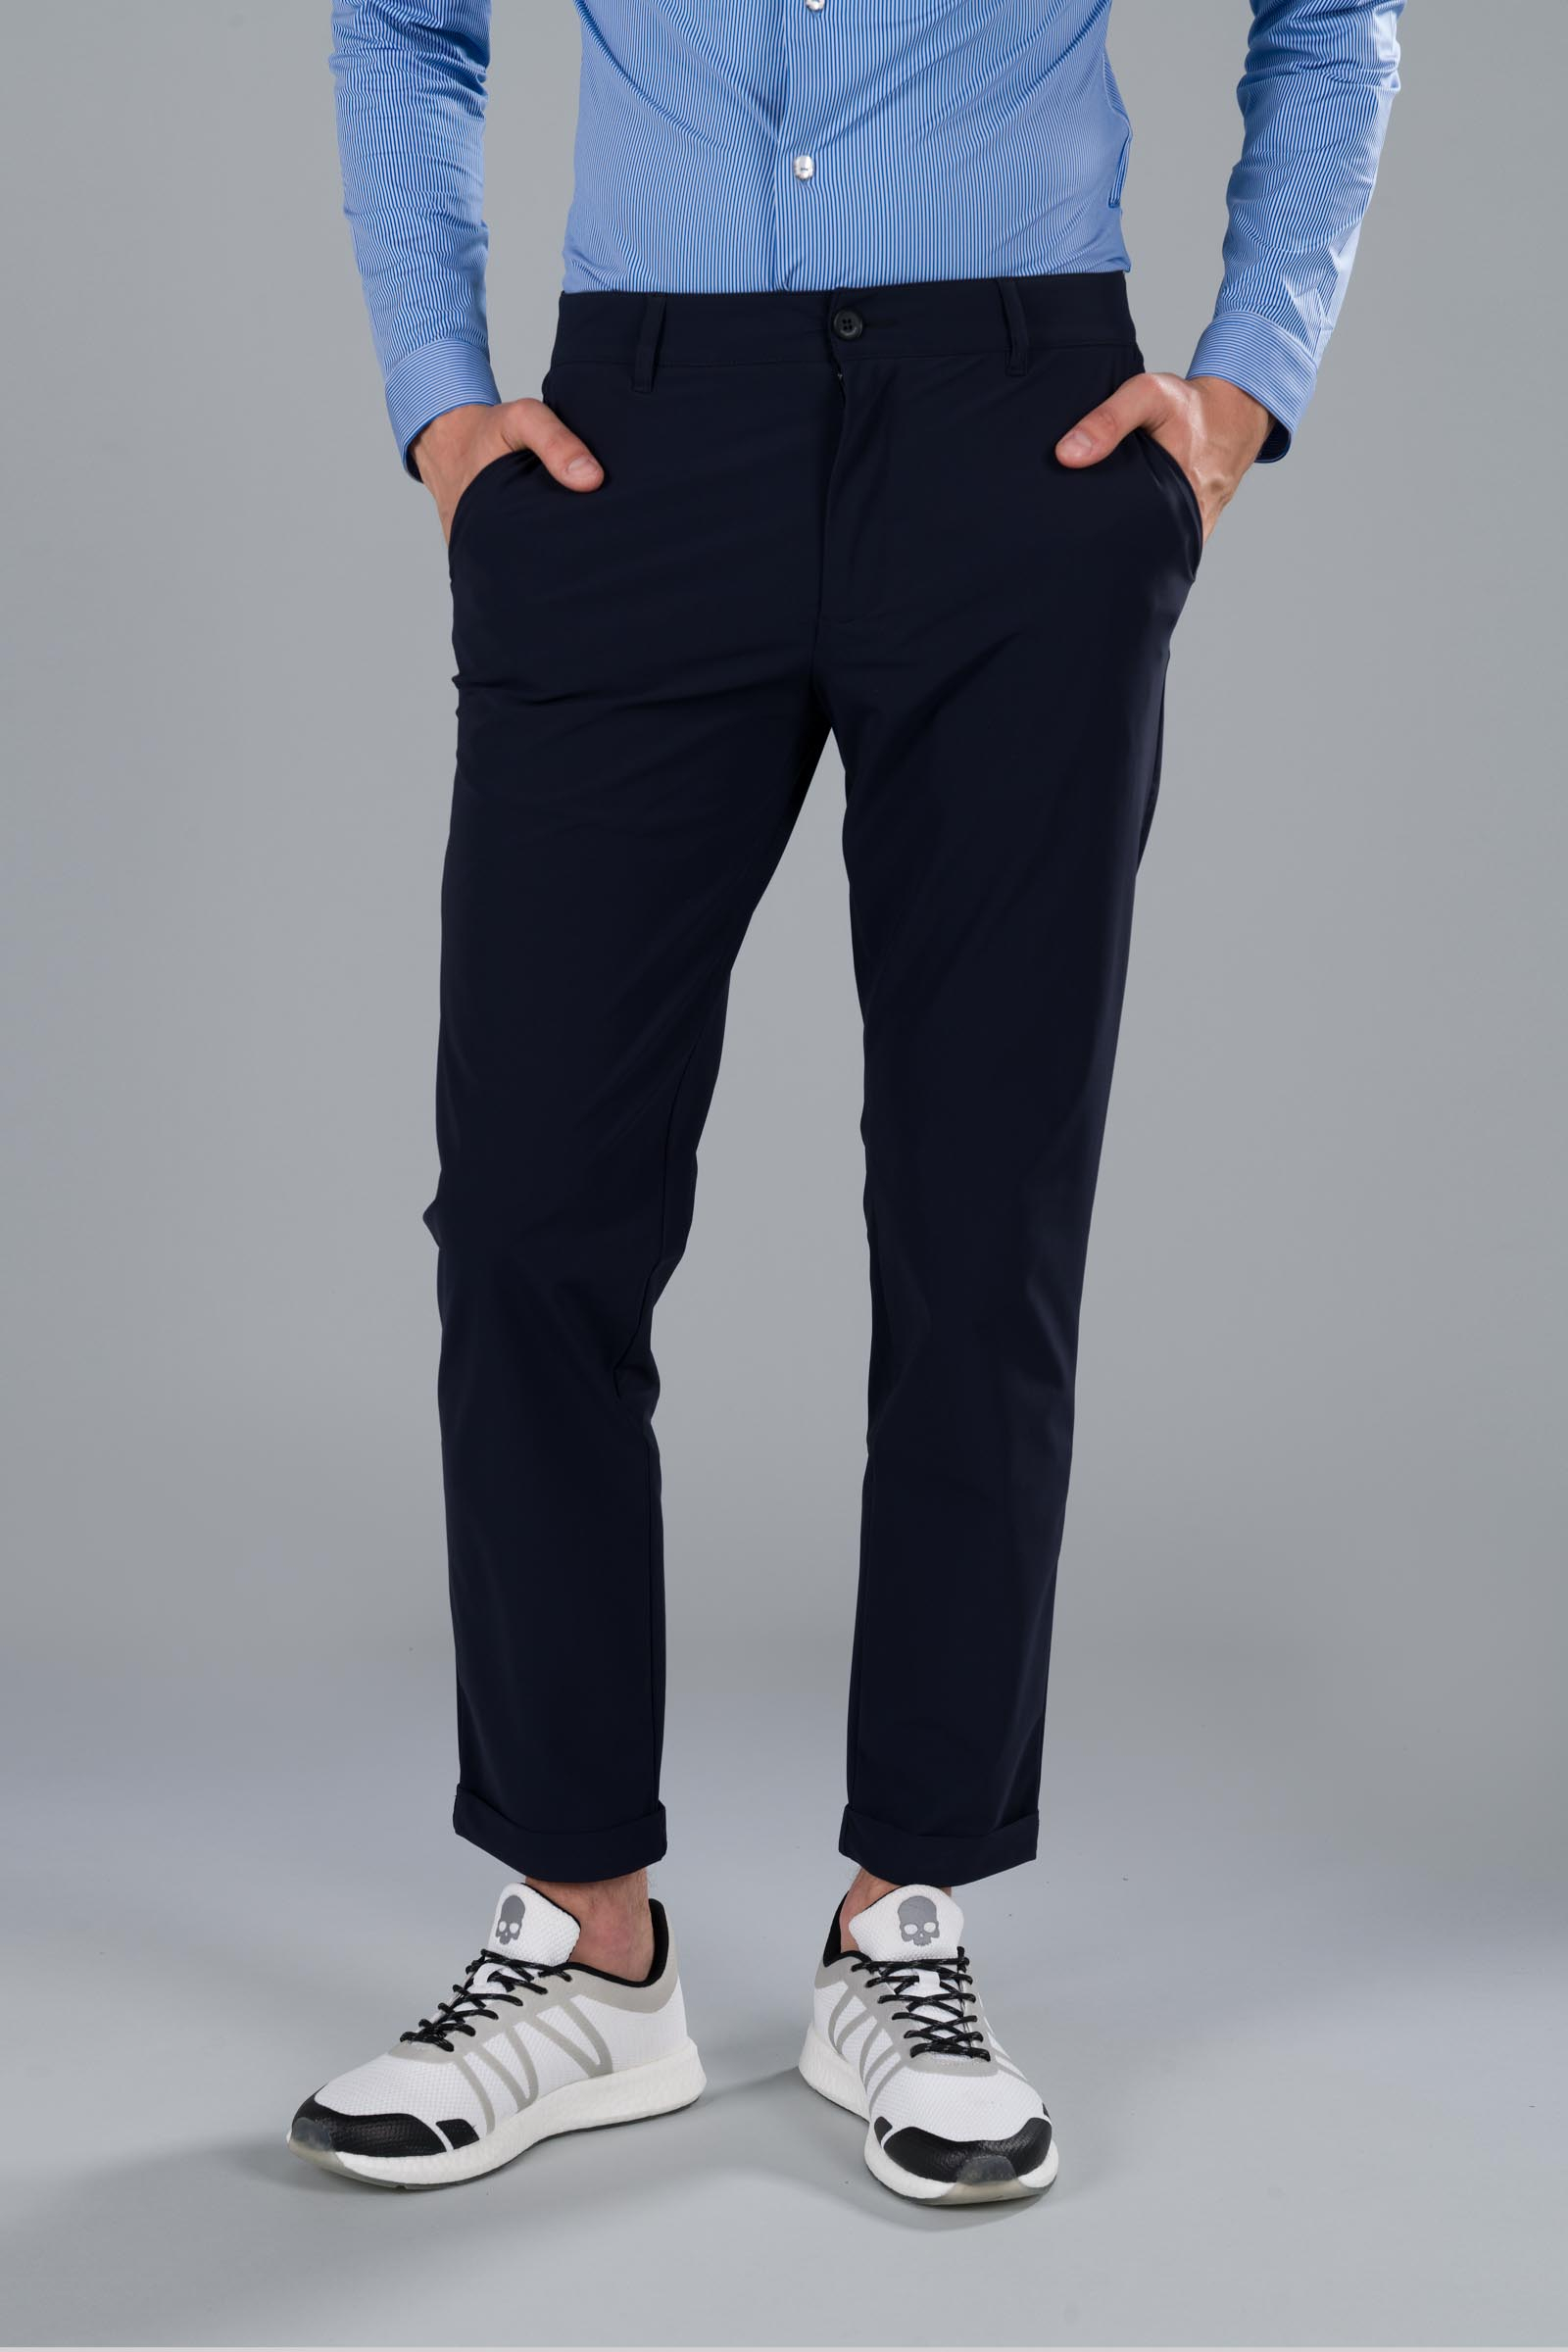 CLASSIC PANTS - Apparel - Hydrogen - Luxury Sportwear